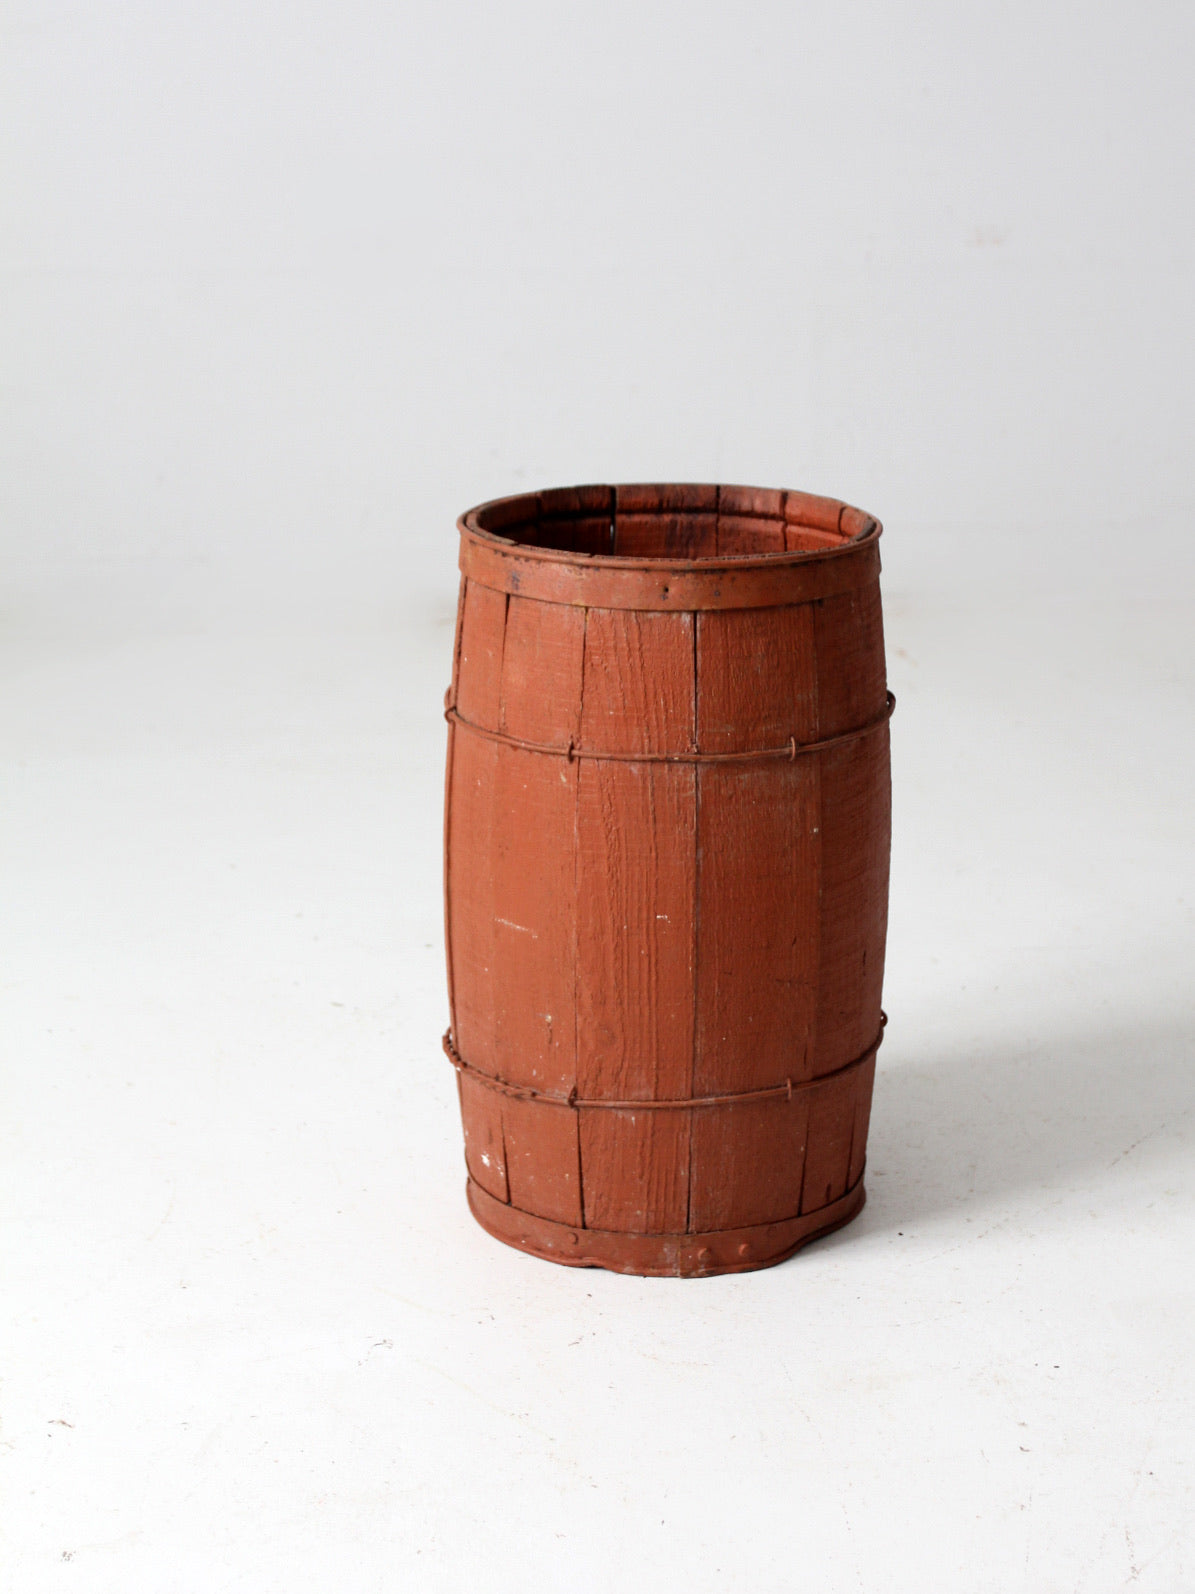 40+ Free Wooden Kegs & Barrel Images - Pixabay